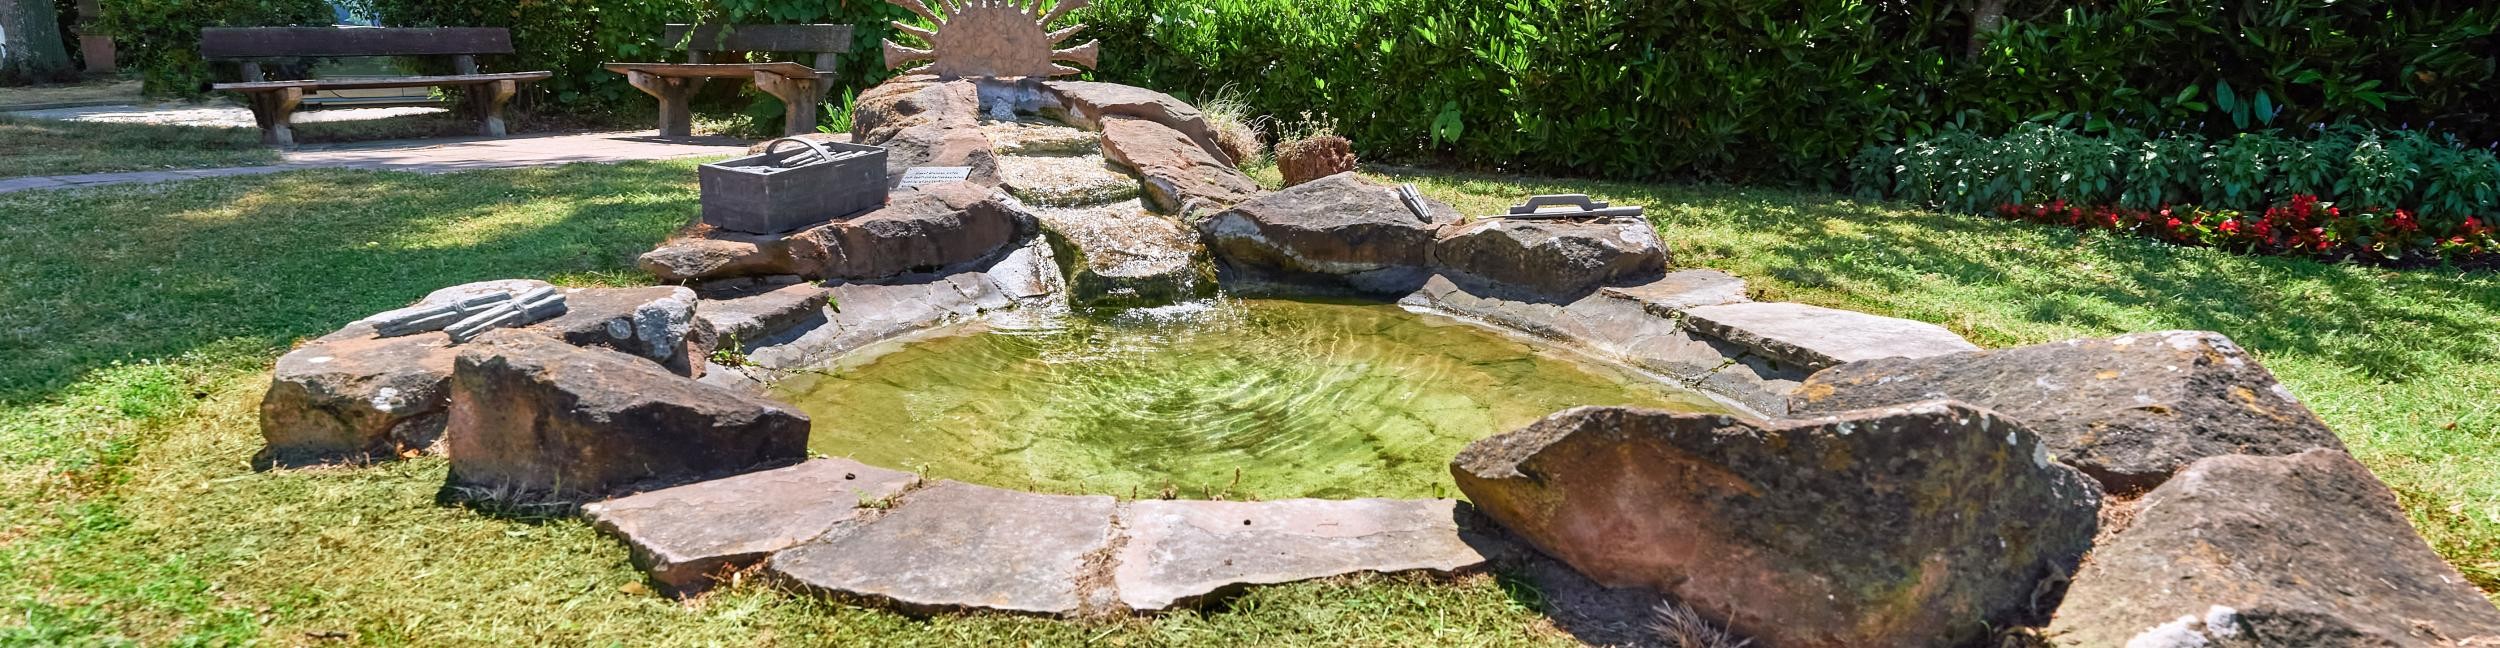 Fontaine d'asperges sur le pré vert de Rauental